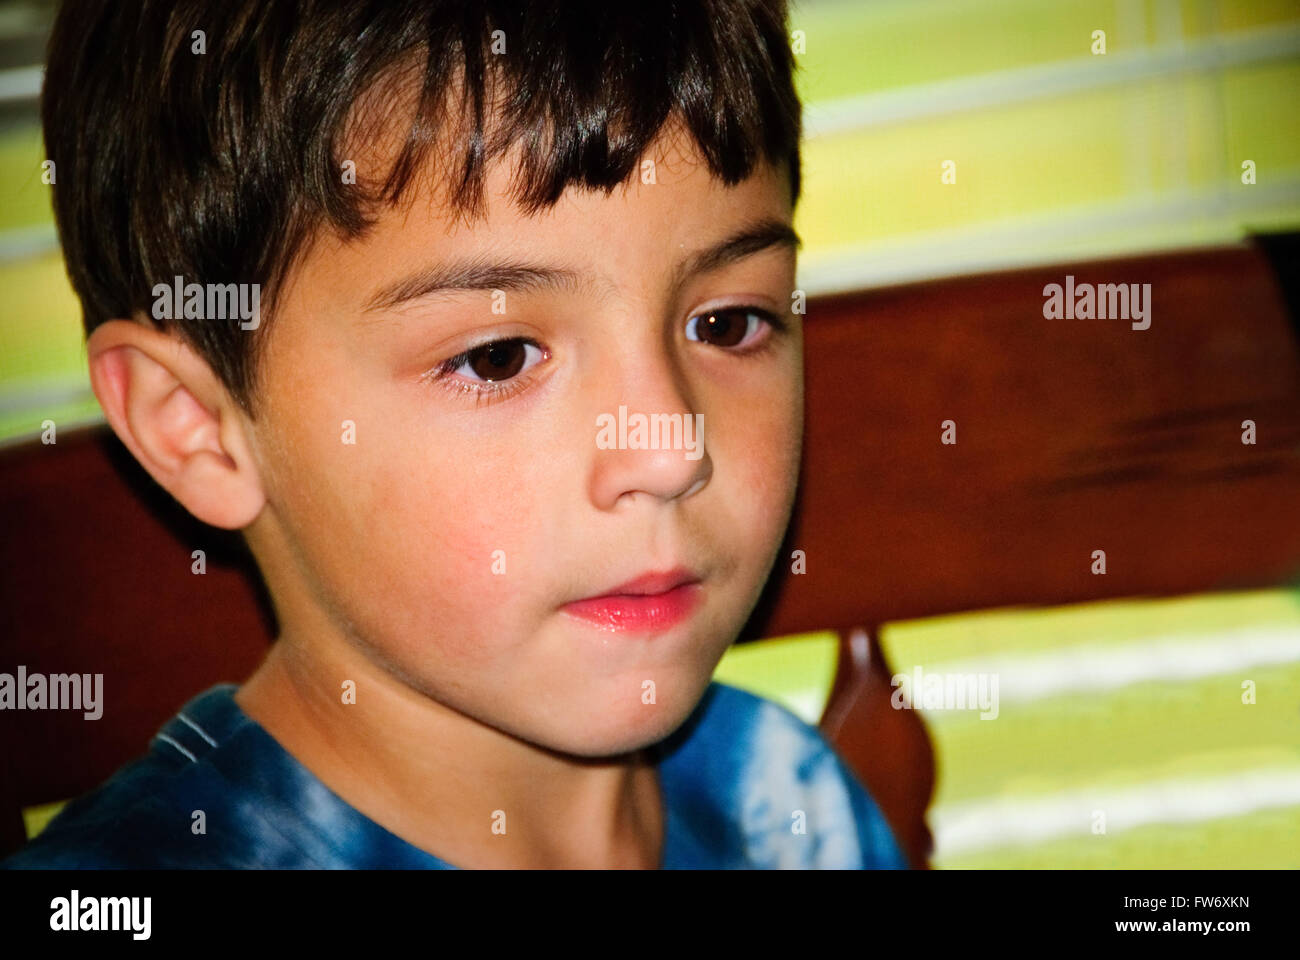 Carino piccolo ragazzo da vicino con i capelli neri e gli occhi marrone scuro cercando gravi. Foto Stock